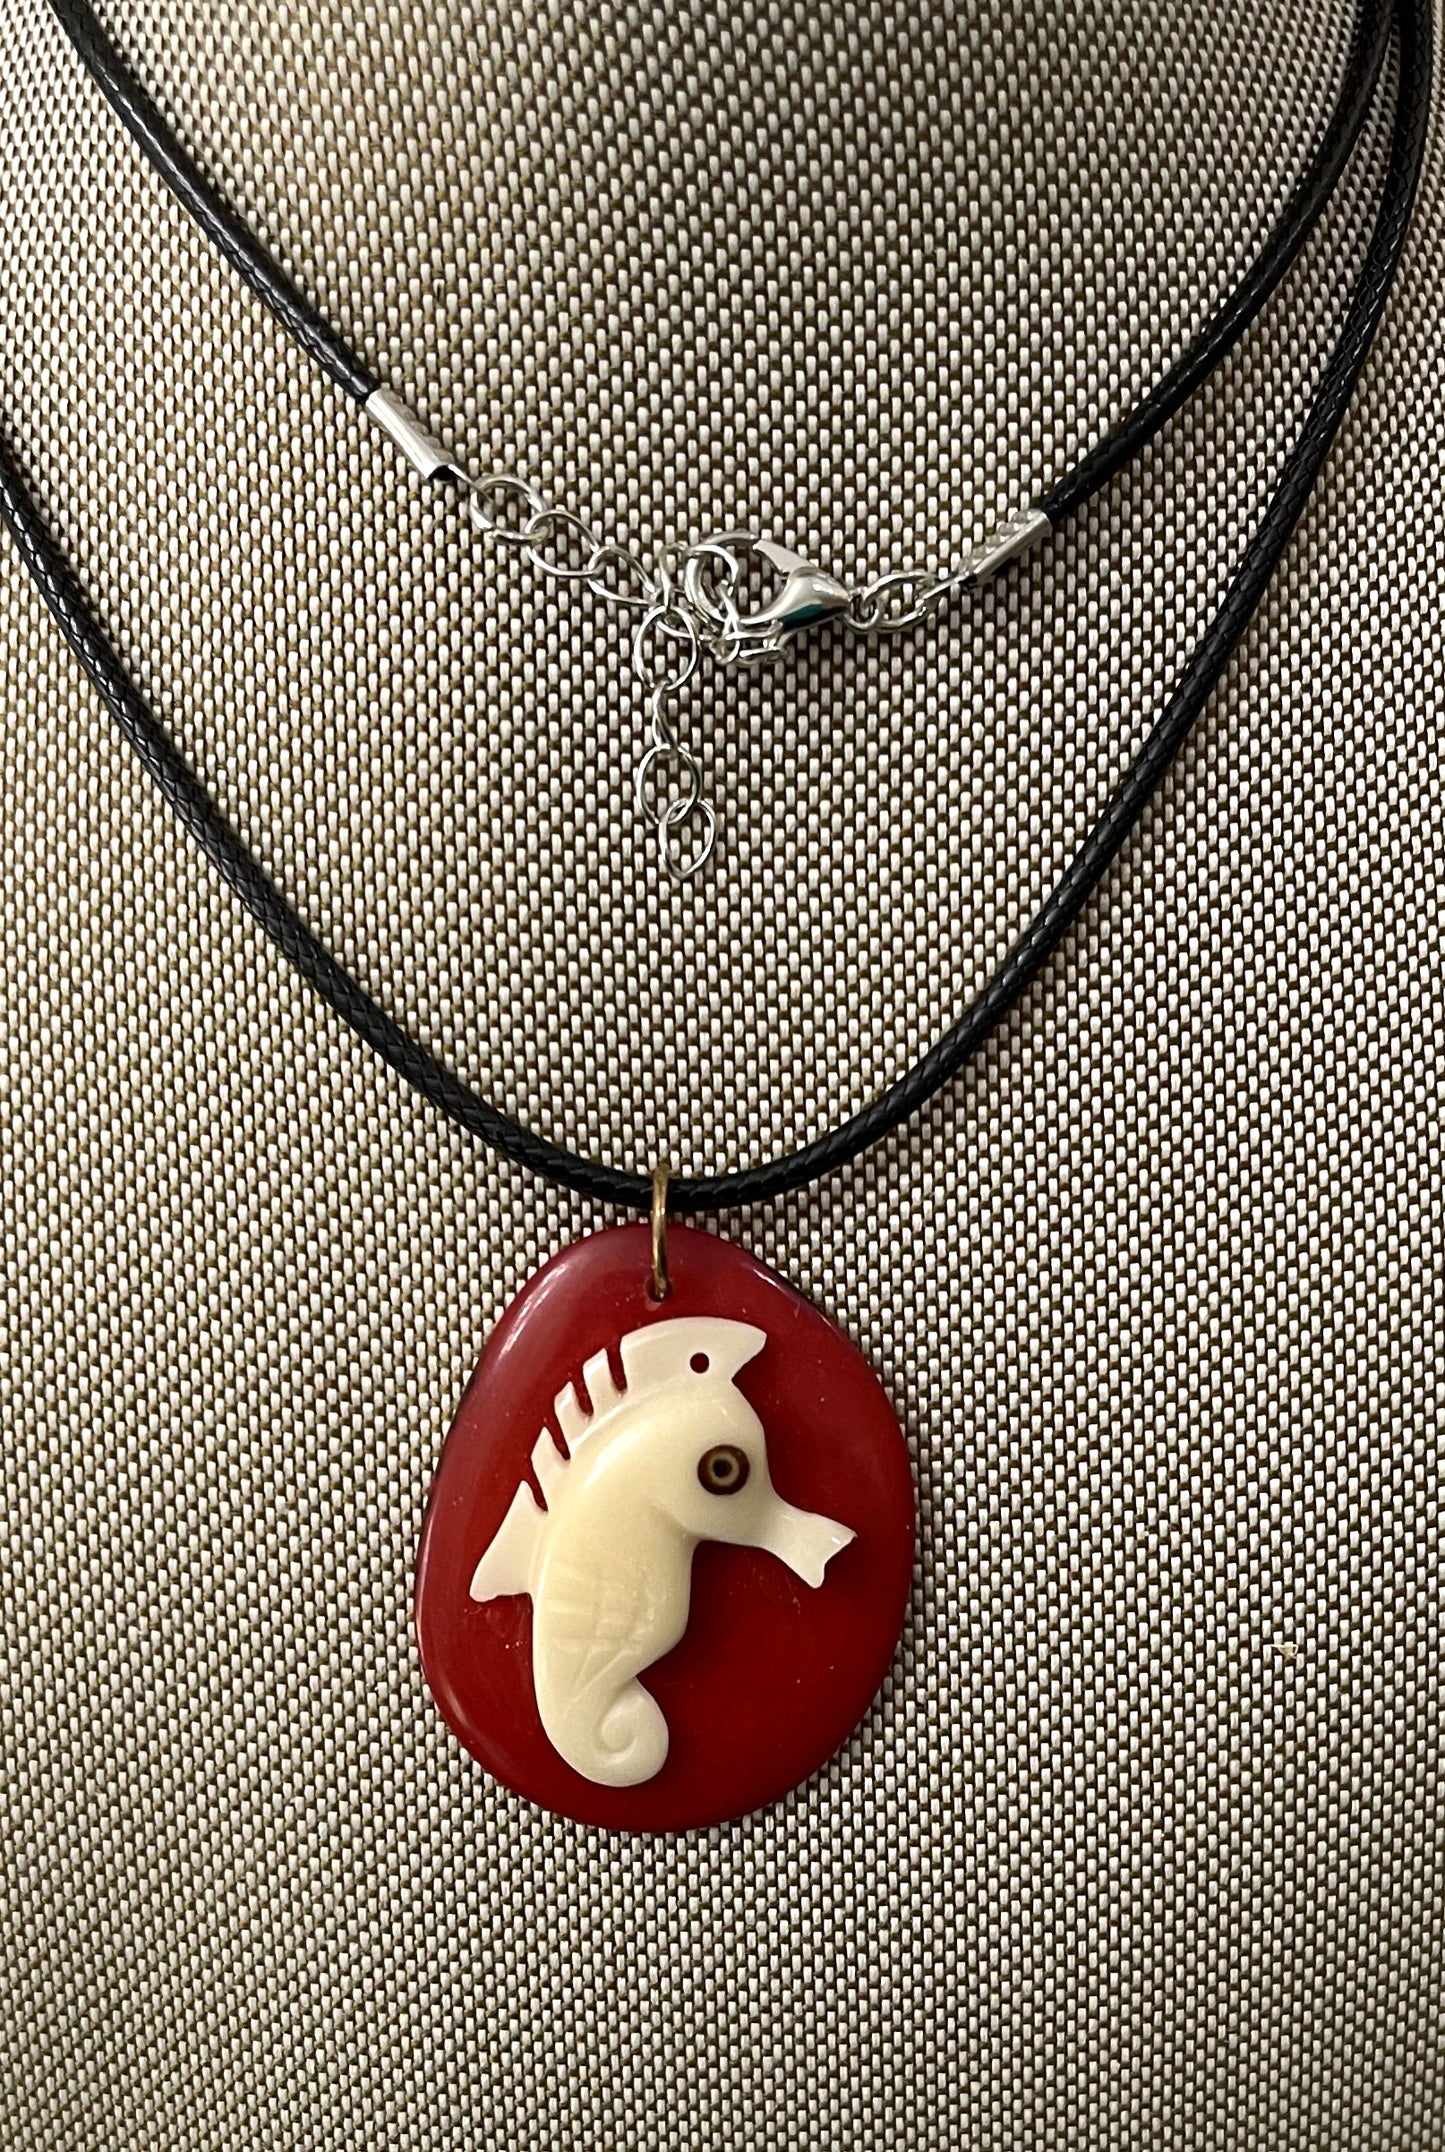 Tagua Carved Seahorse On Tagua Necklace Pendant Panama